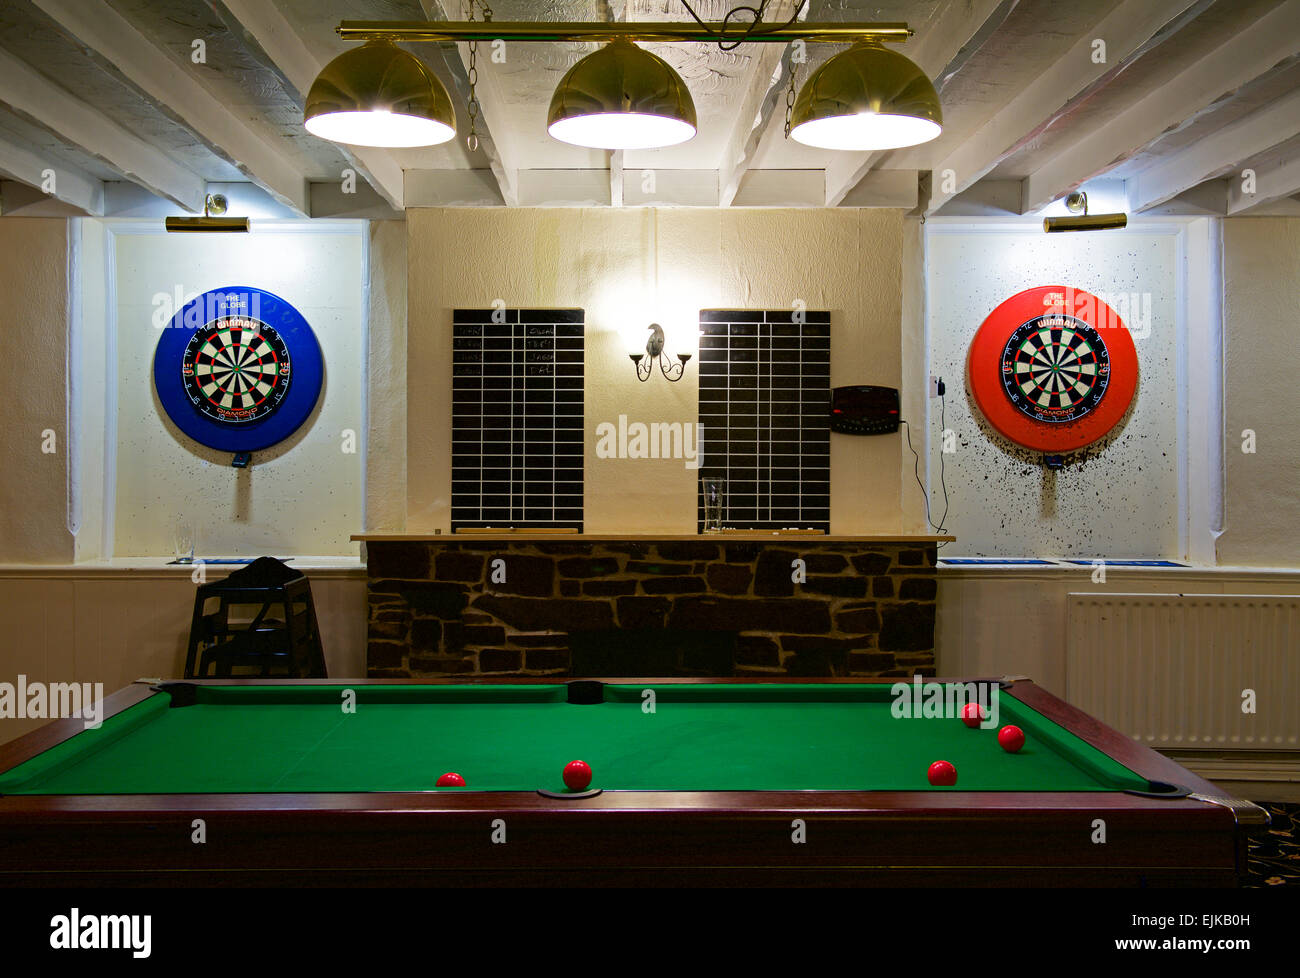 Jeux de fléchettes et table de billard en pub, England, UK Banque D'Images